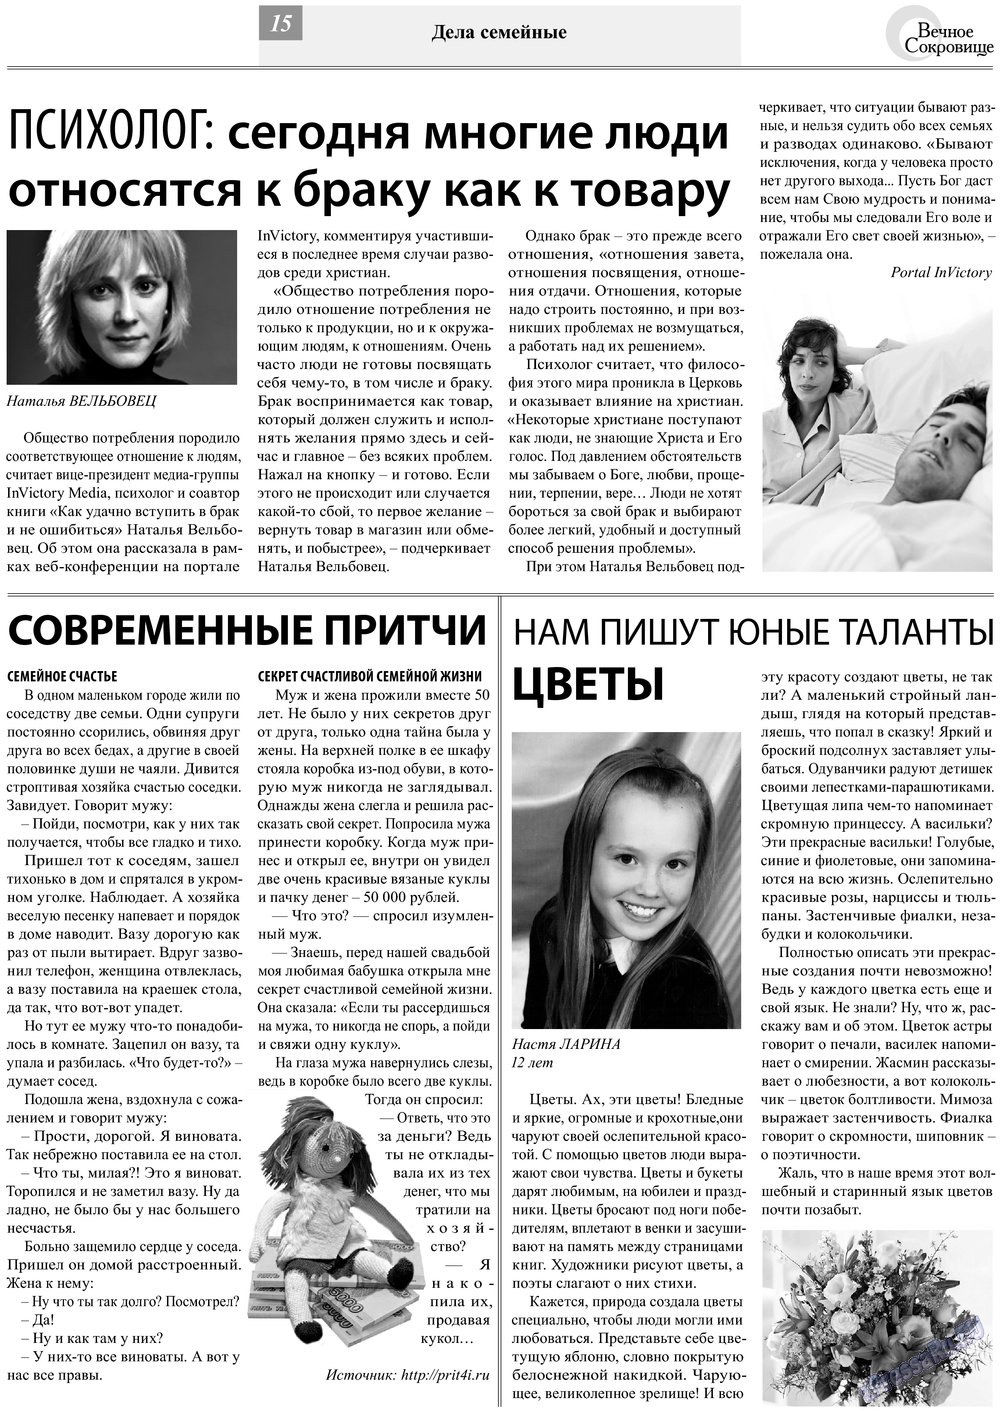 Вечное сокровище, газета. 2013 №2 стр.15